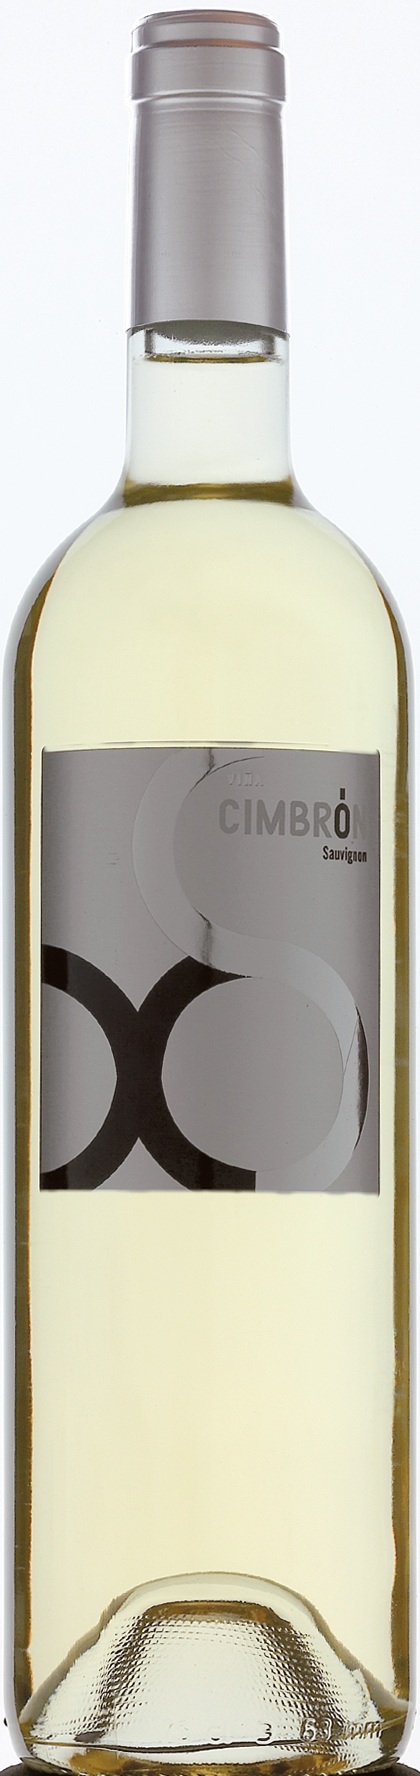 Bild von der Weinflasche Viña Cimbrón Sauvignon